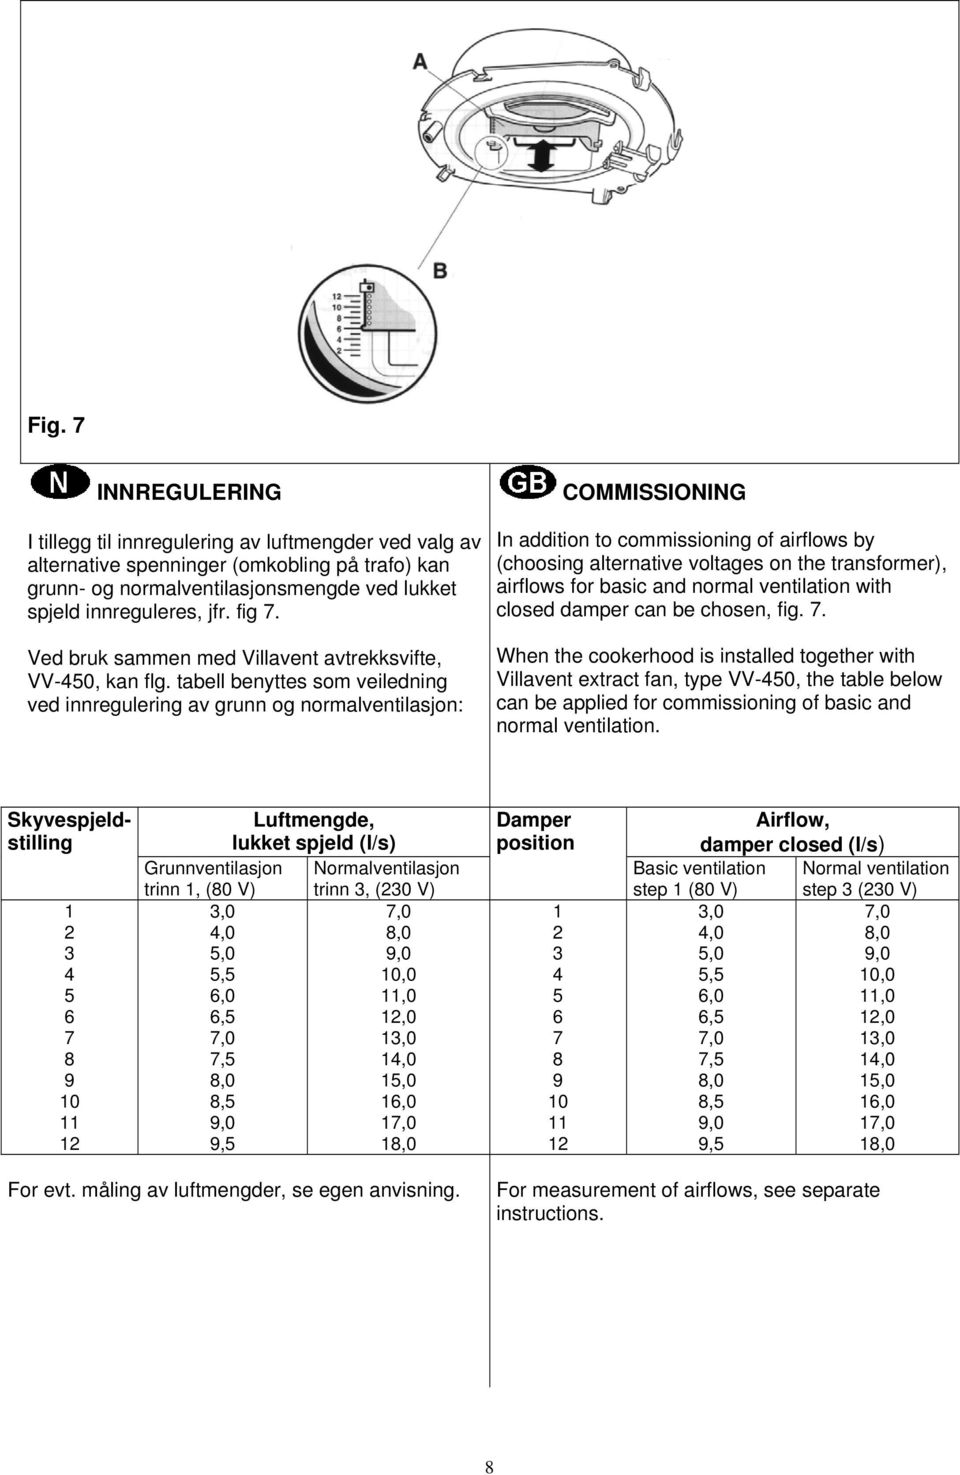 tabell benyttes som veiledning ved innregulering av grunn og normalventilasjon: COMMISSIONING In addition to commissioning of airflows by (choosing alternative voltages on the transformer), airflows